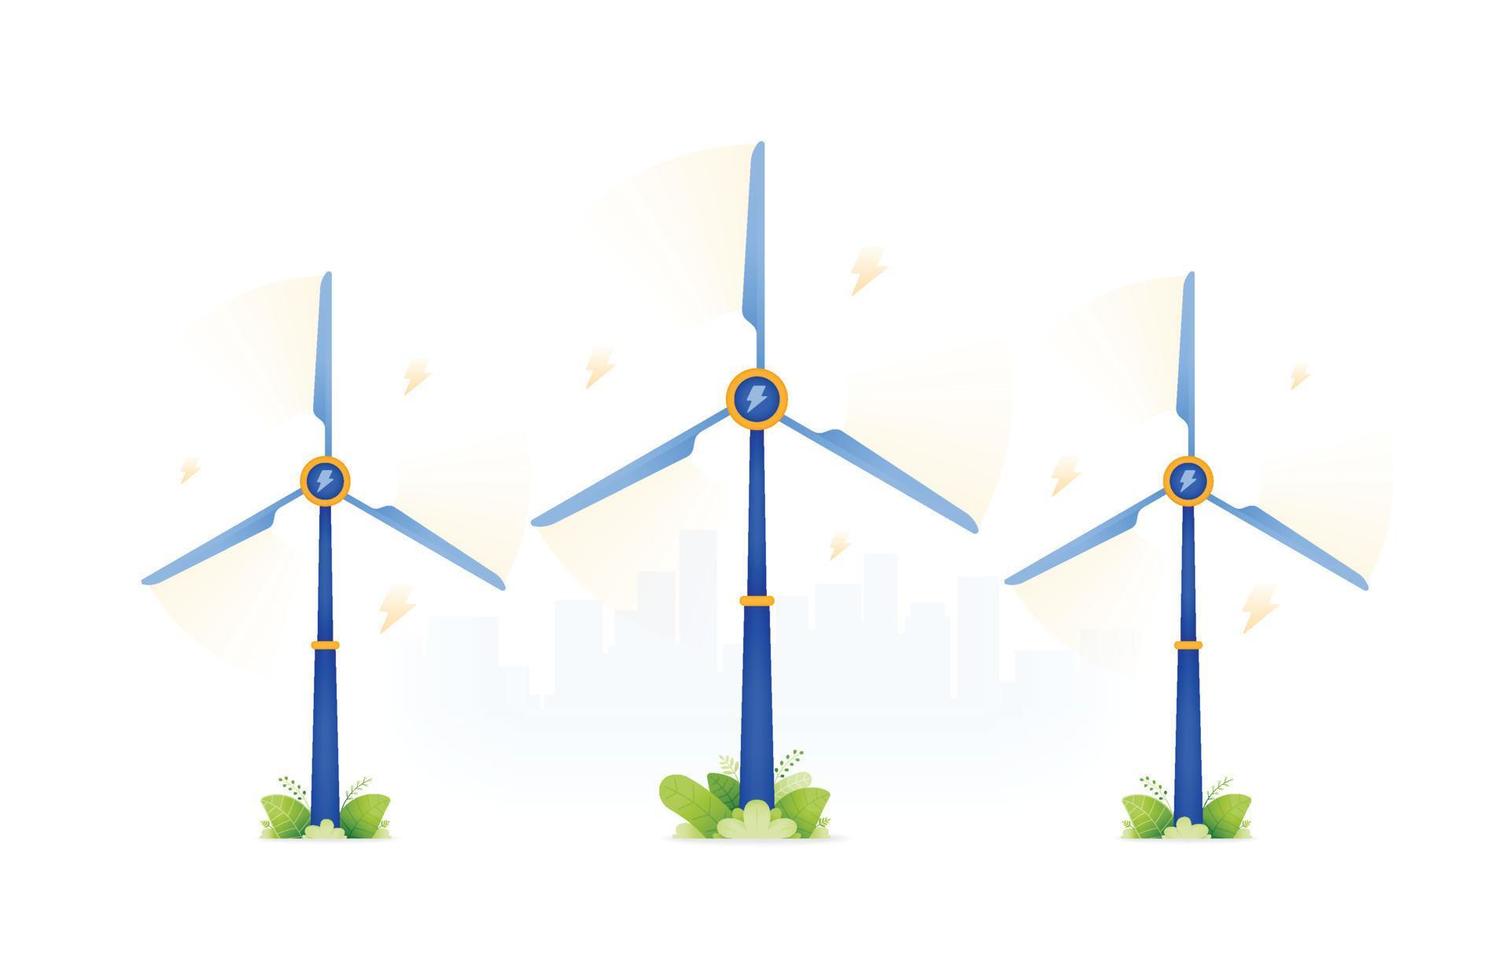 ilustración de diseño de energía verde que es ambiental y socialmente amigable mediante el uso de turbinas eólicas. Molino de viento de bajas emisiones energéticas y seguro. se puede utilizar para web, sitio web, carteles, aplicaciones, folletos vector